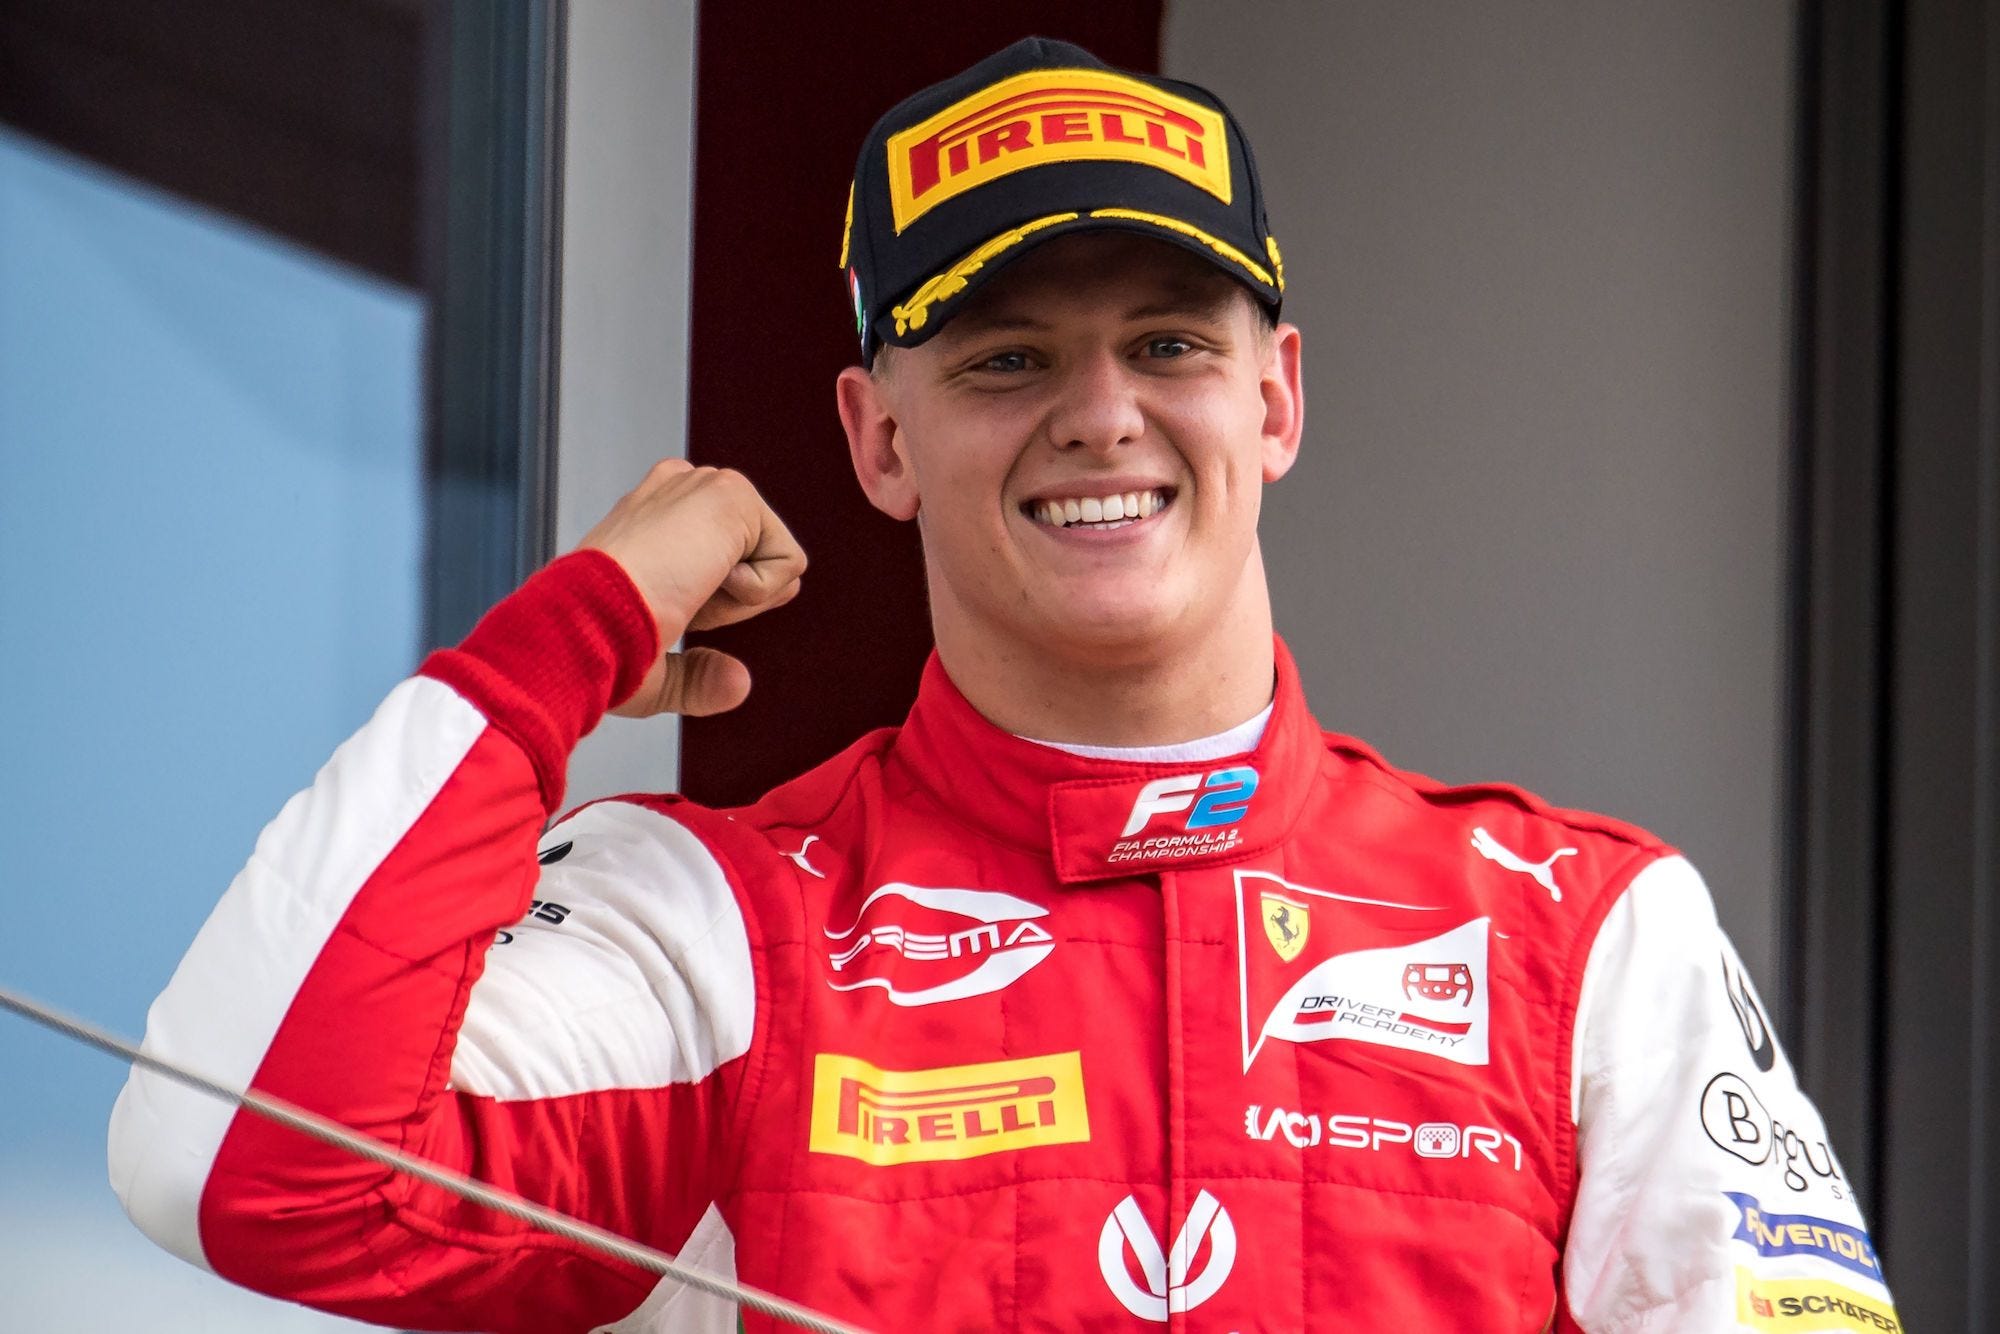 Mick Schumacher de zoon van Micheal Schumacher, Formule 1 debuut